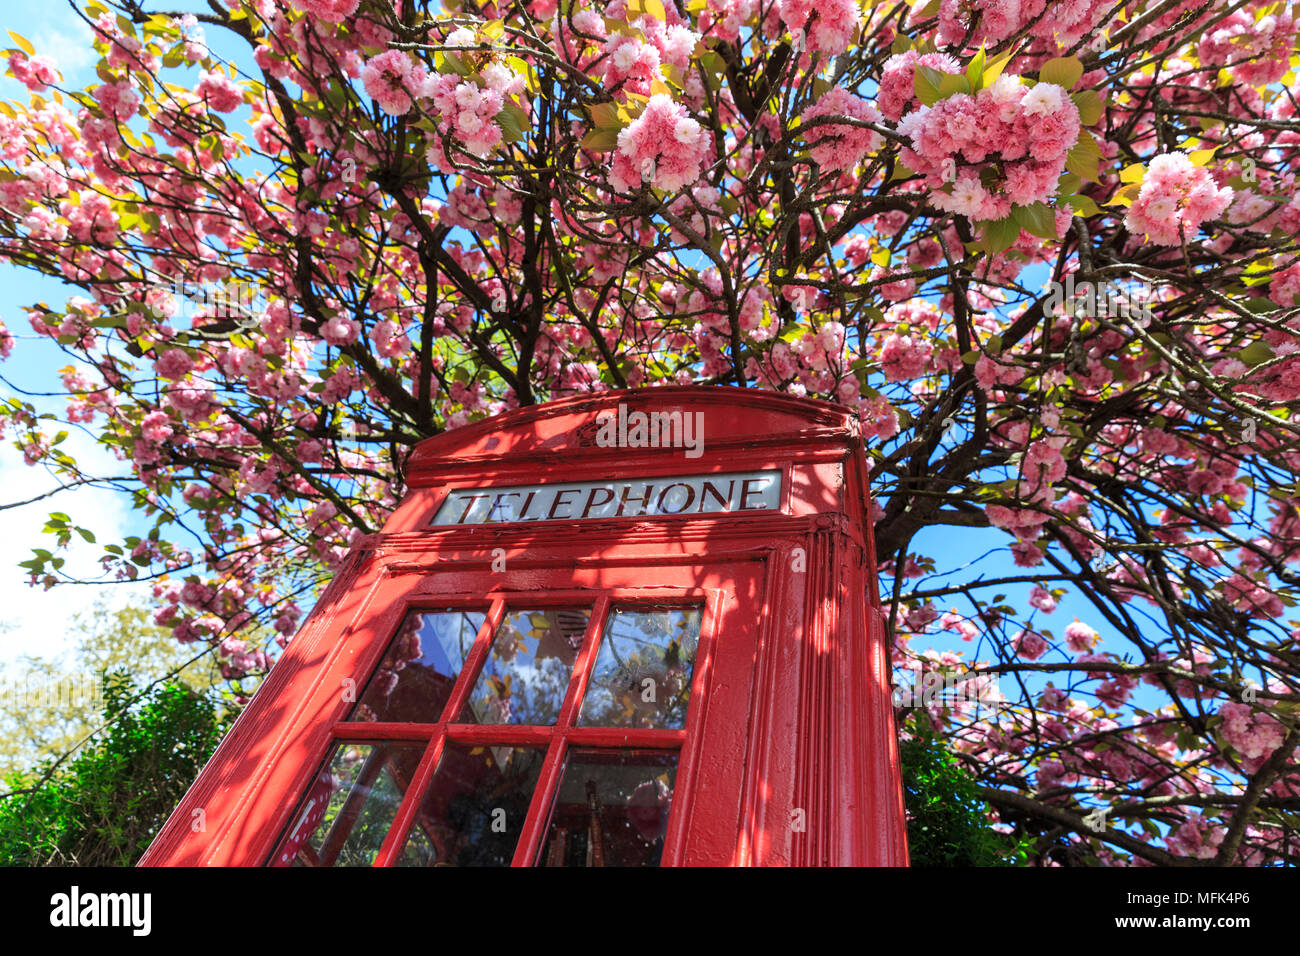 Lewisham, Londres, 26 de abril de 2018. La primavera está llamando! Un teléfono rojo icónico cuadro, ahora se usa como una mini-biblioteca gratuita para la comunidad, se encuentra delante de un árbol en la bella flor de cerezo rosa en un día que ve el cielo azul claro de intercambiar con las nubes y la lluvia pesada ocasionales. Crédito: Imageplotter noticias y deportes/Alamy Live News Foto de stock